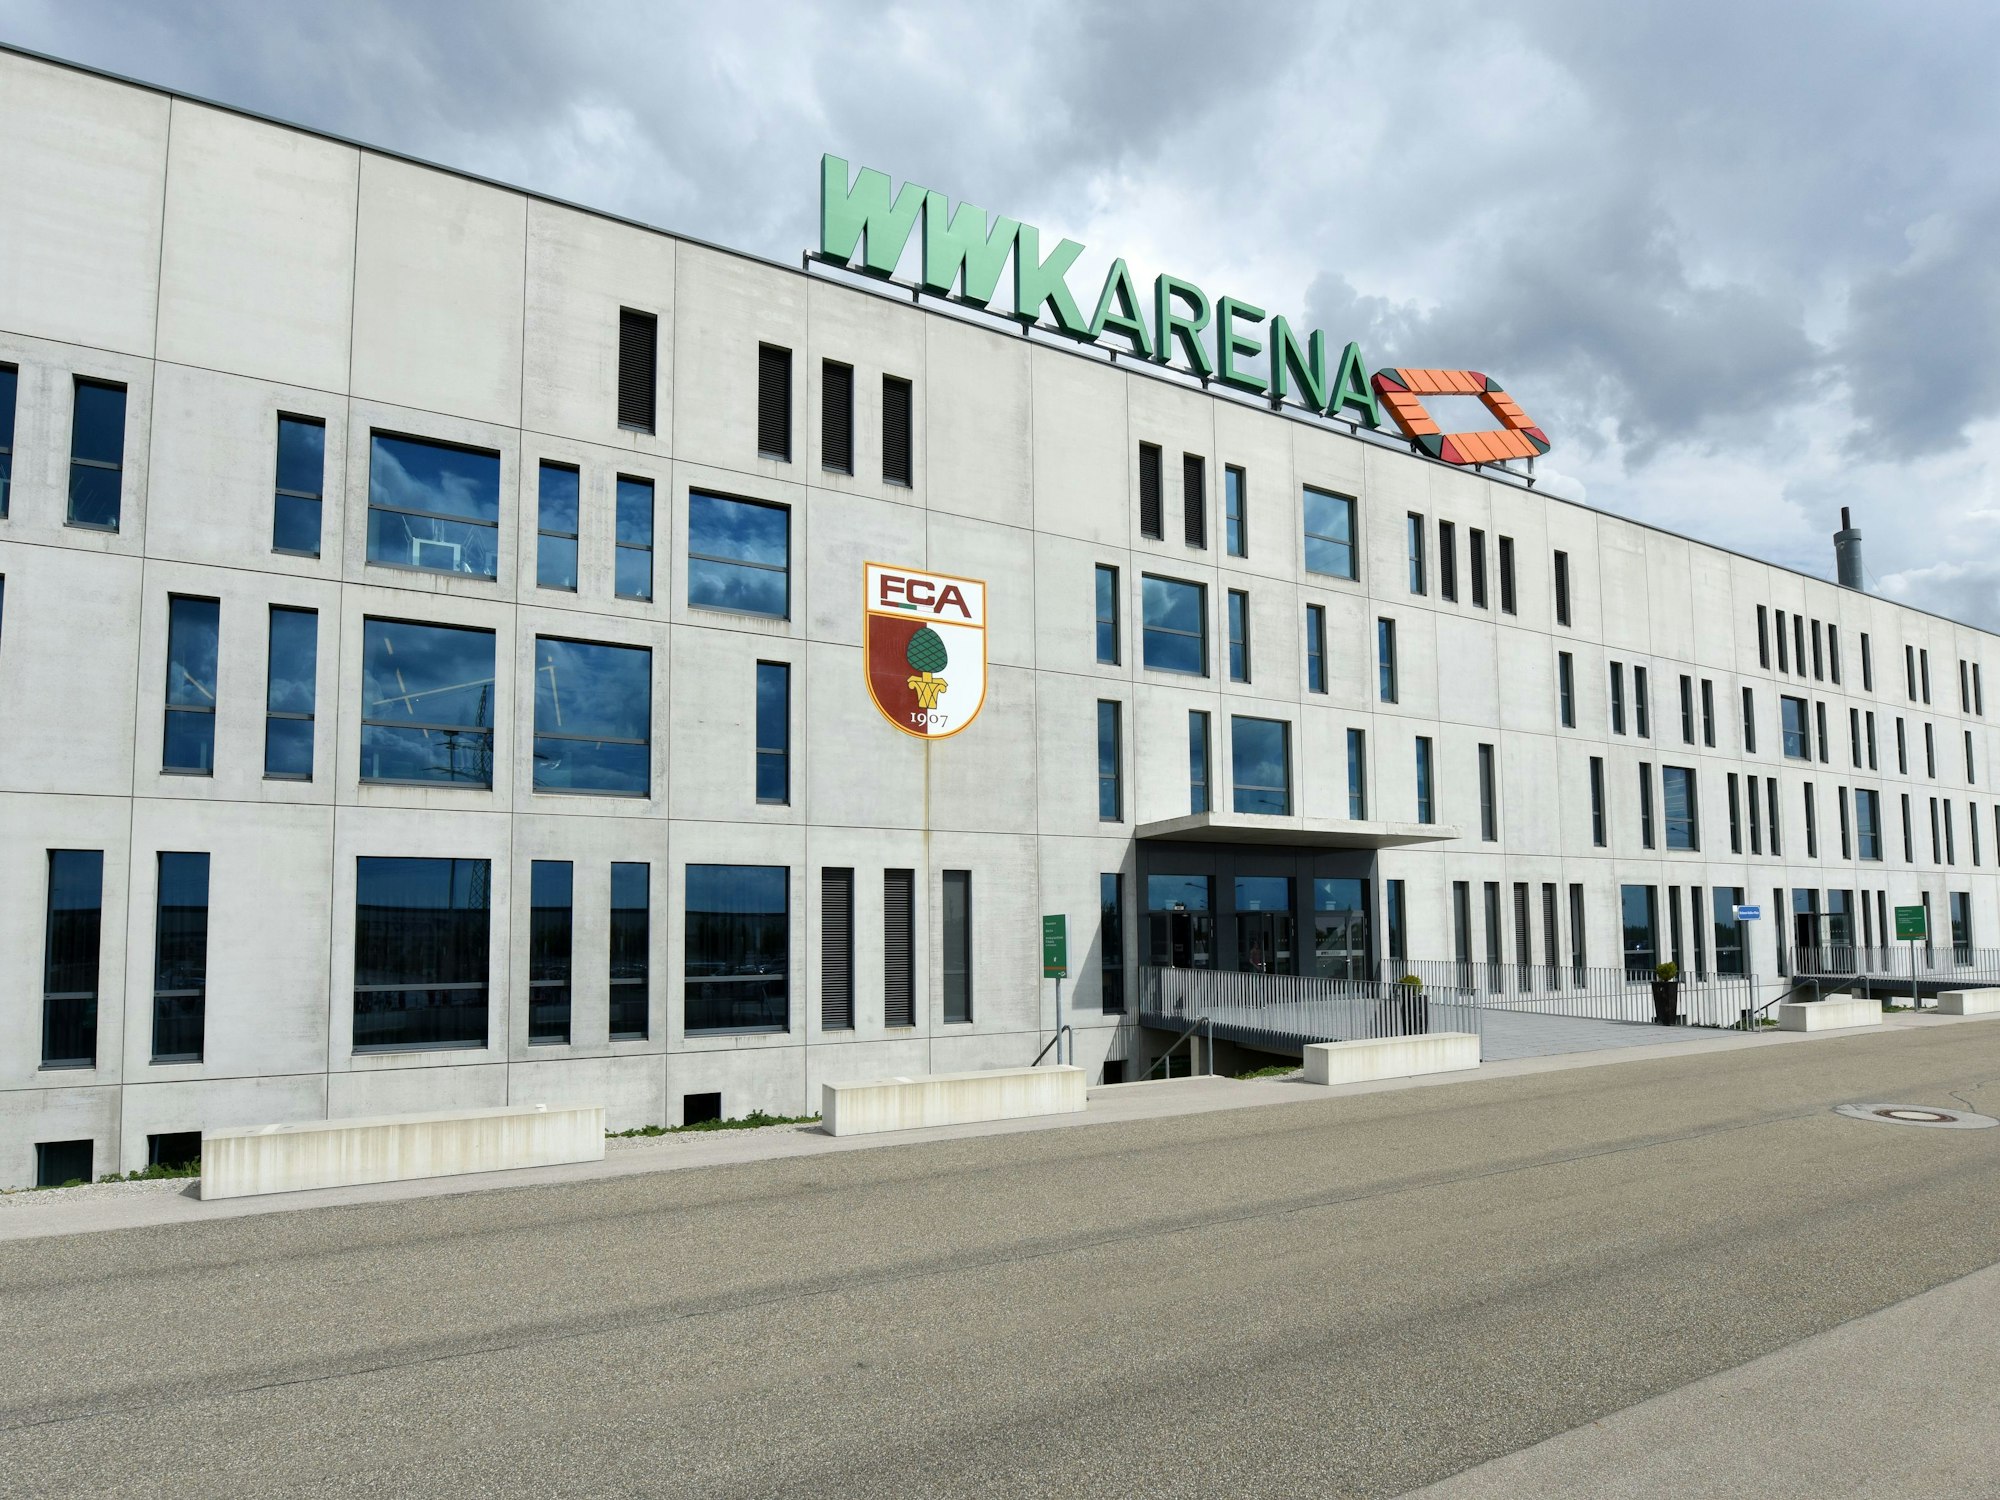 Die WWK Arena in Augsburg.